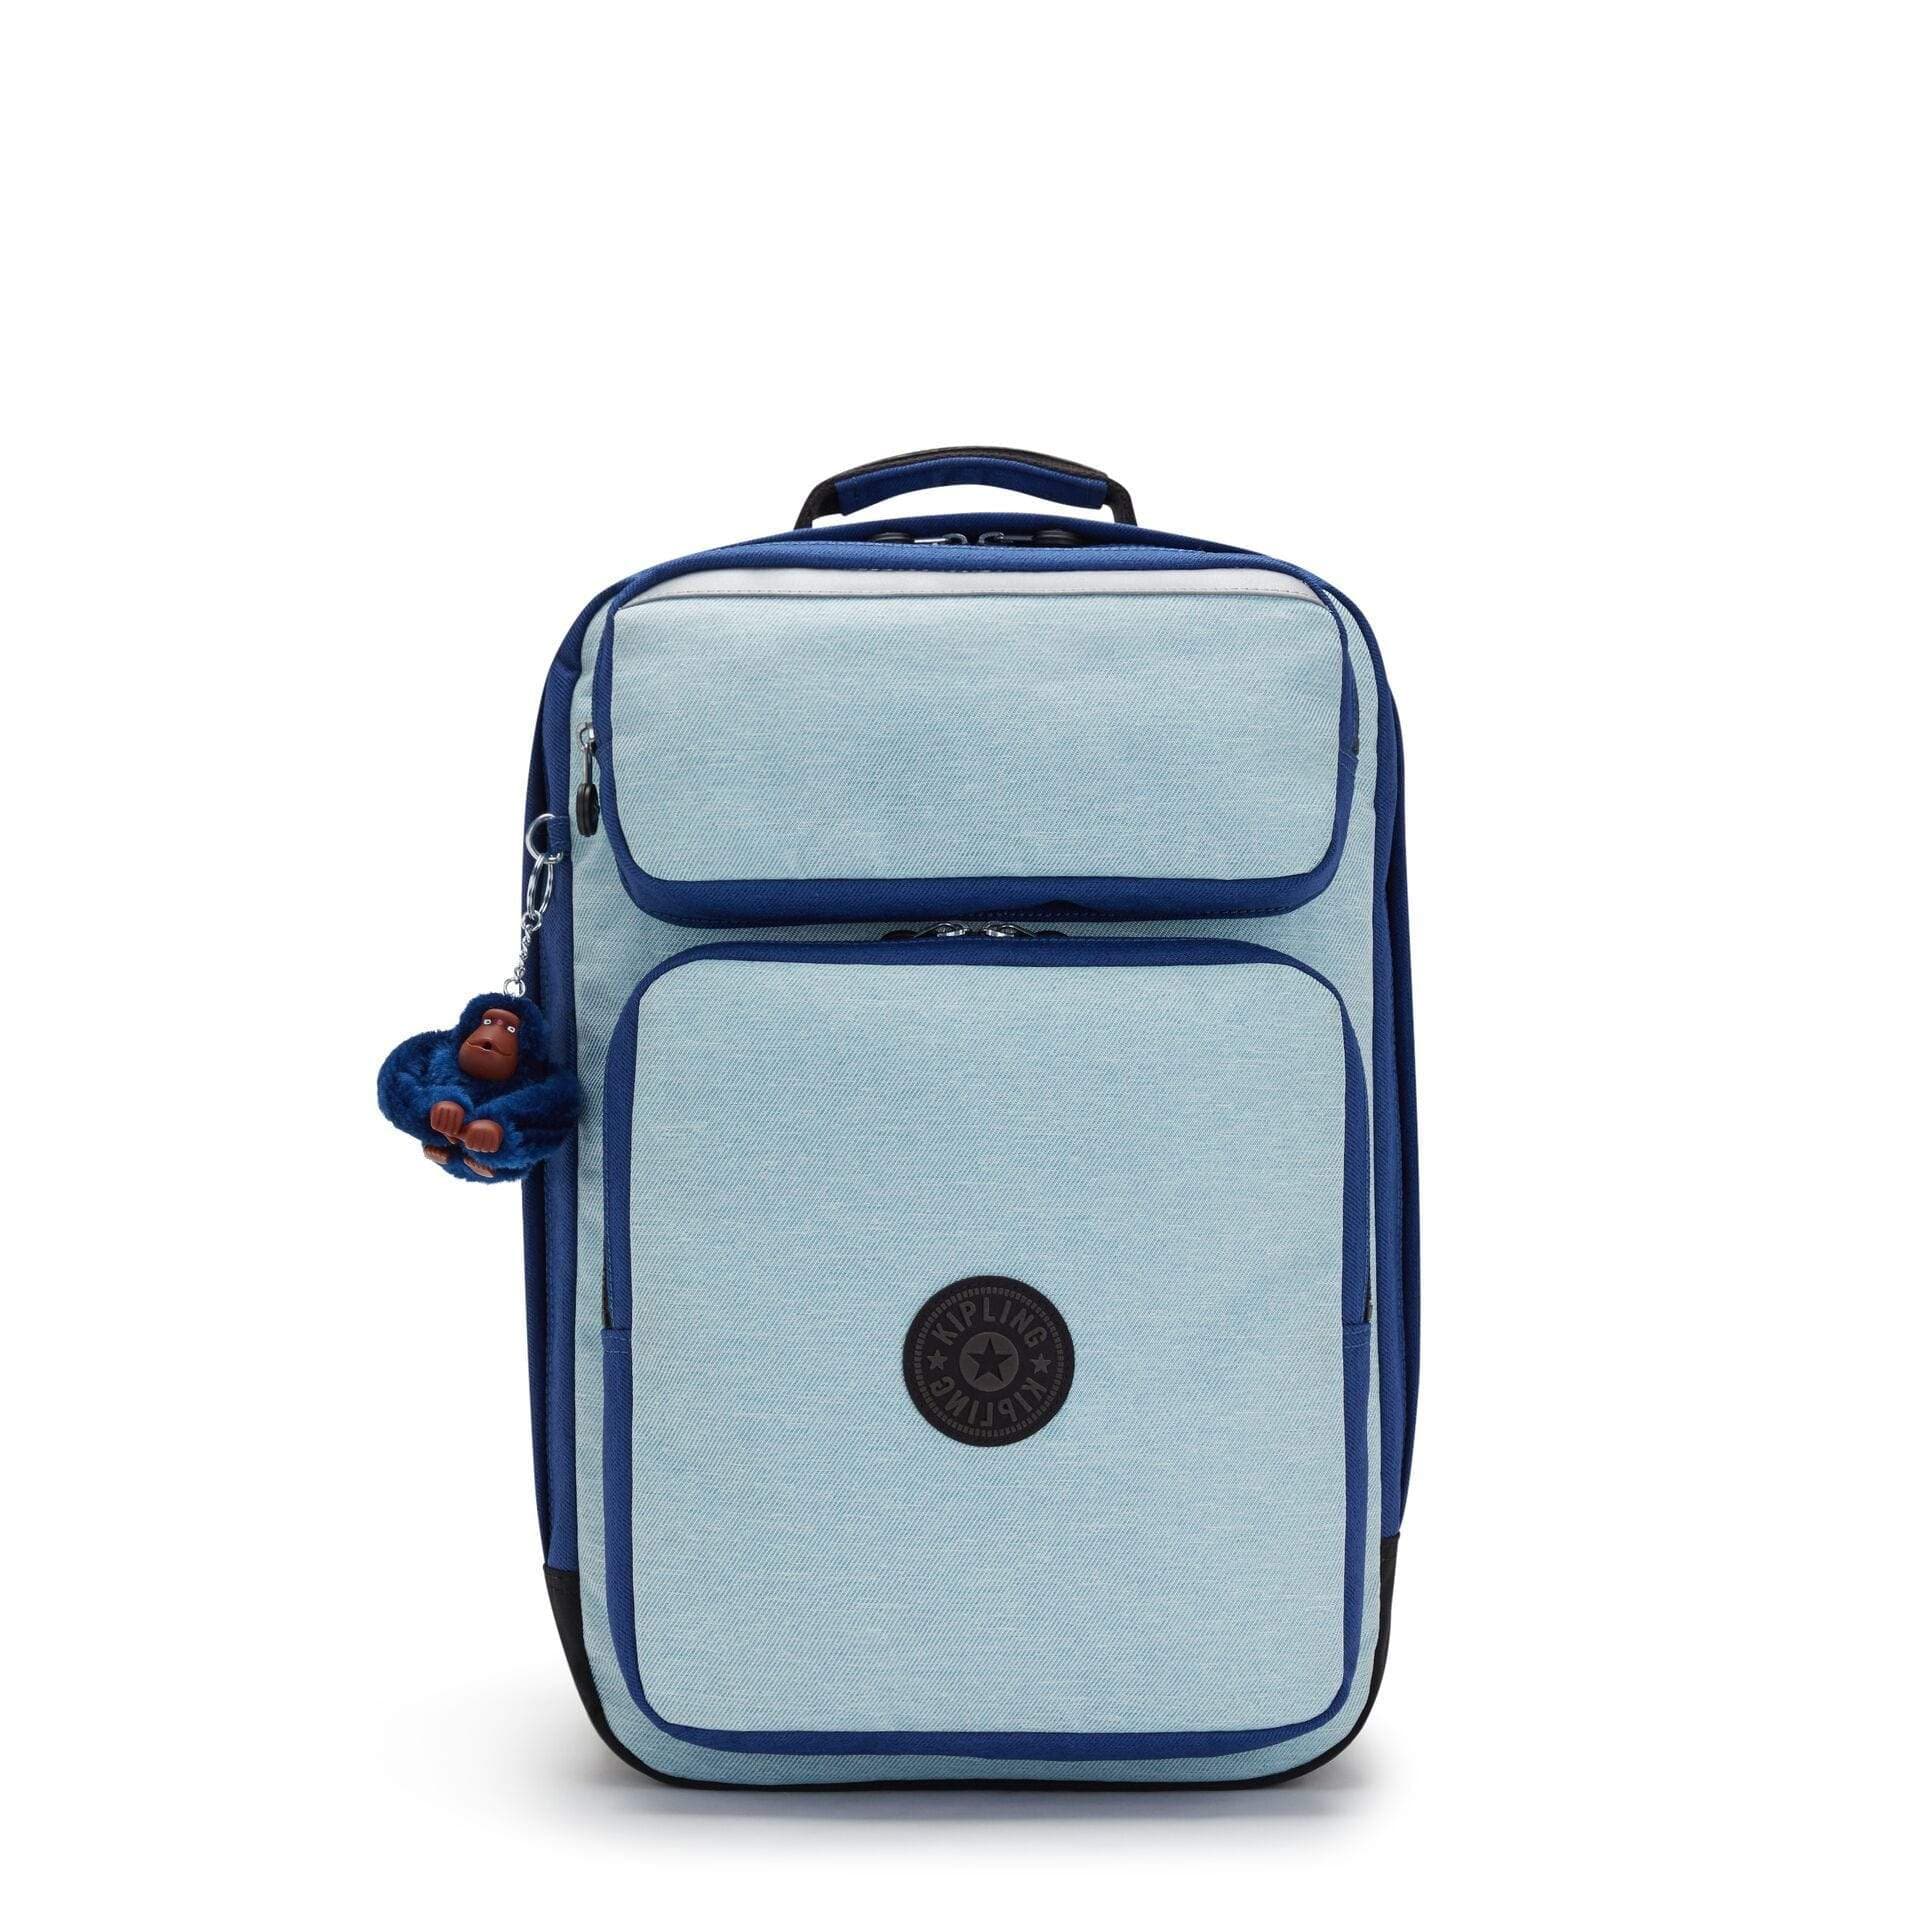 KIPLING-SCOTTY-Large Backpack with Laptop Sleeve-Fresh Denim Bl-I3322-Z23 - I3322-Z23